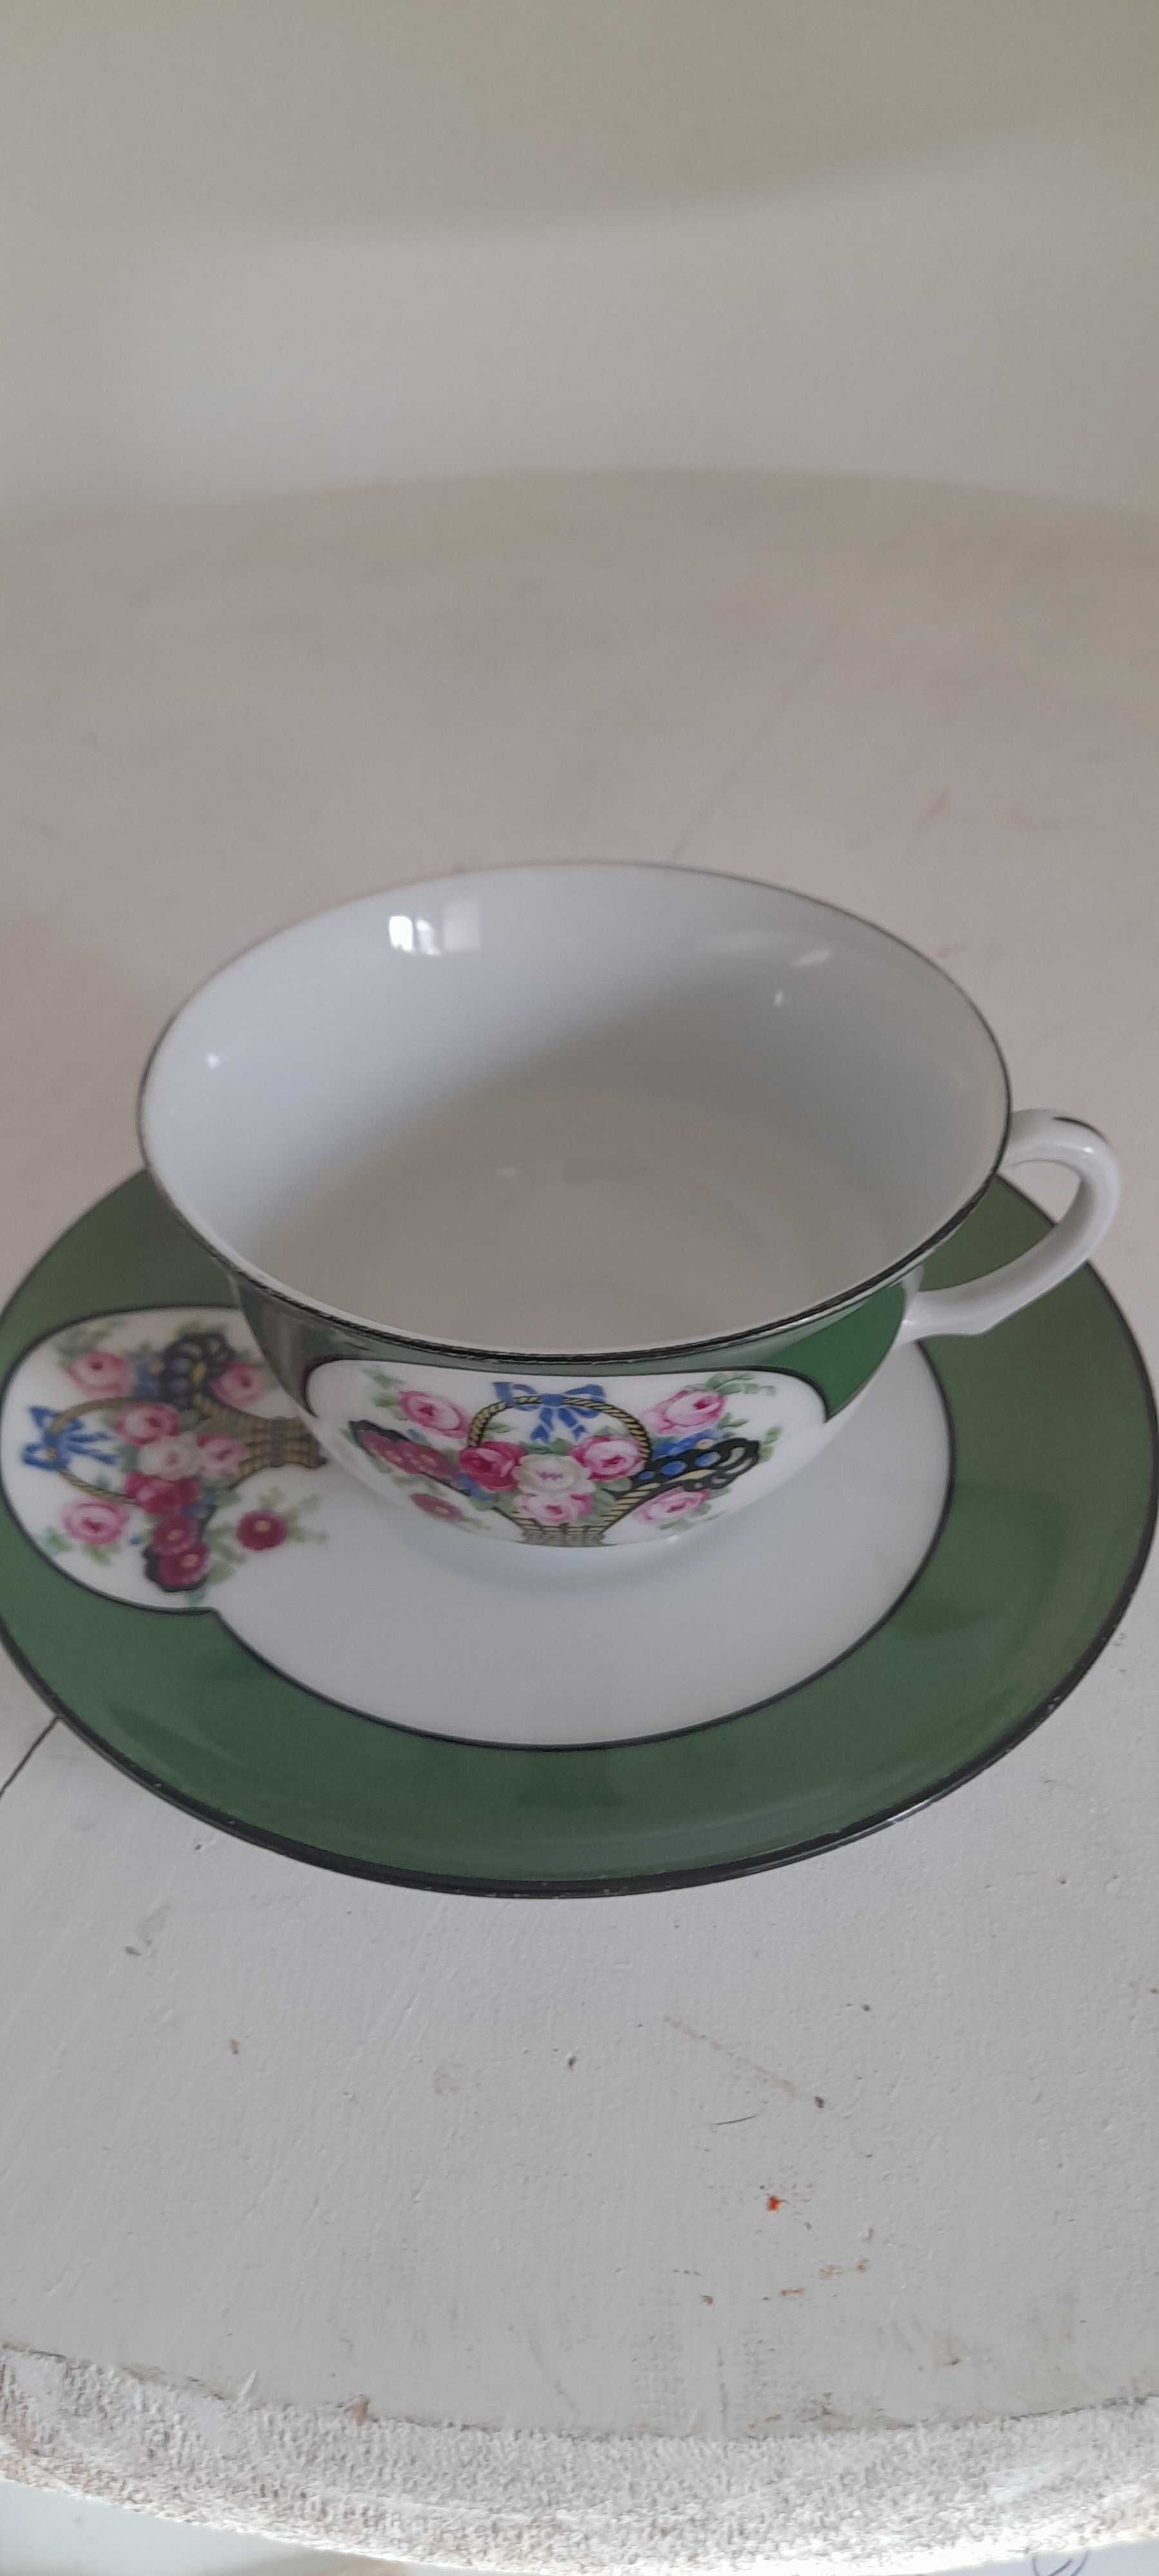 Chávena em porcelana fina, muito antiga. Origem Checoslováquia